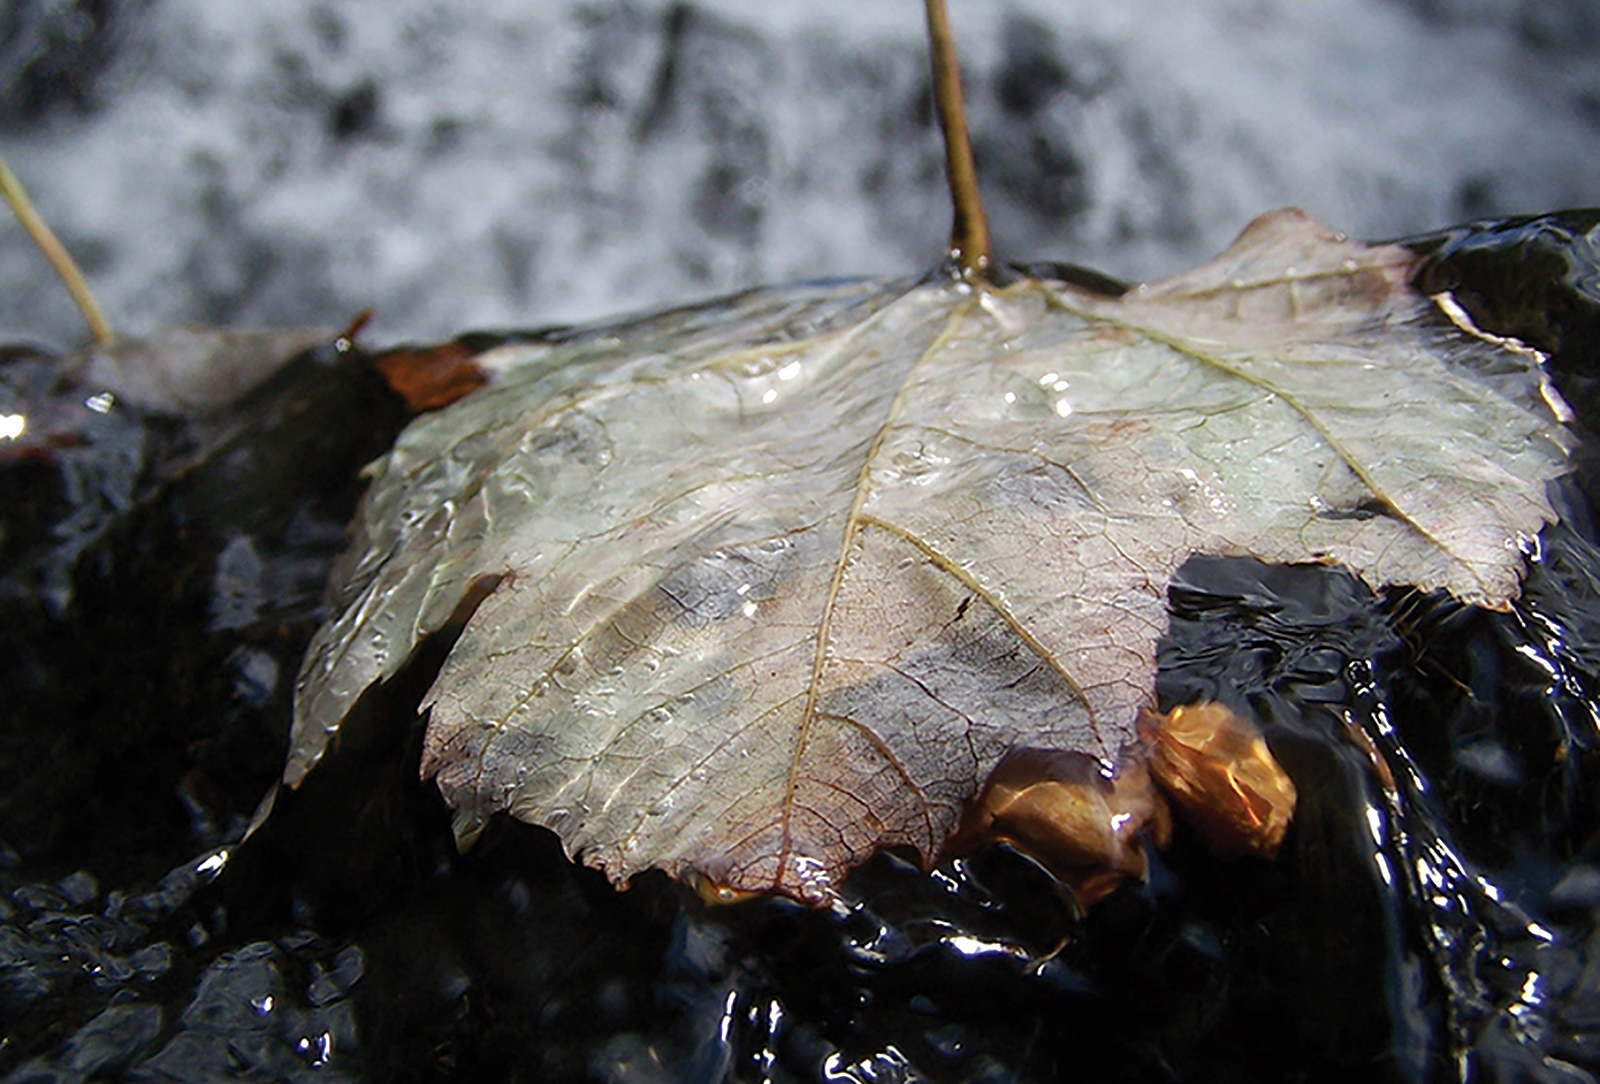 Silver-leaf-falls-Adam-Pletzke-Cashiers-nc